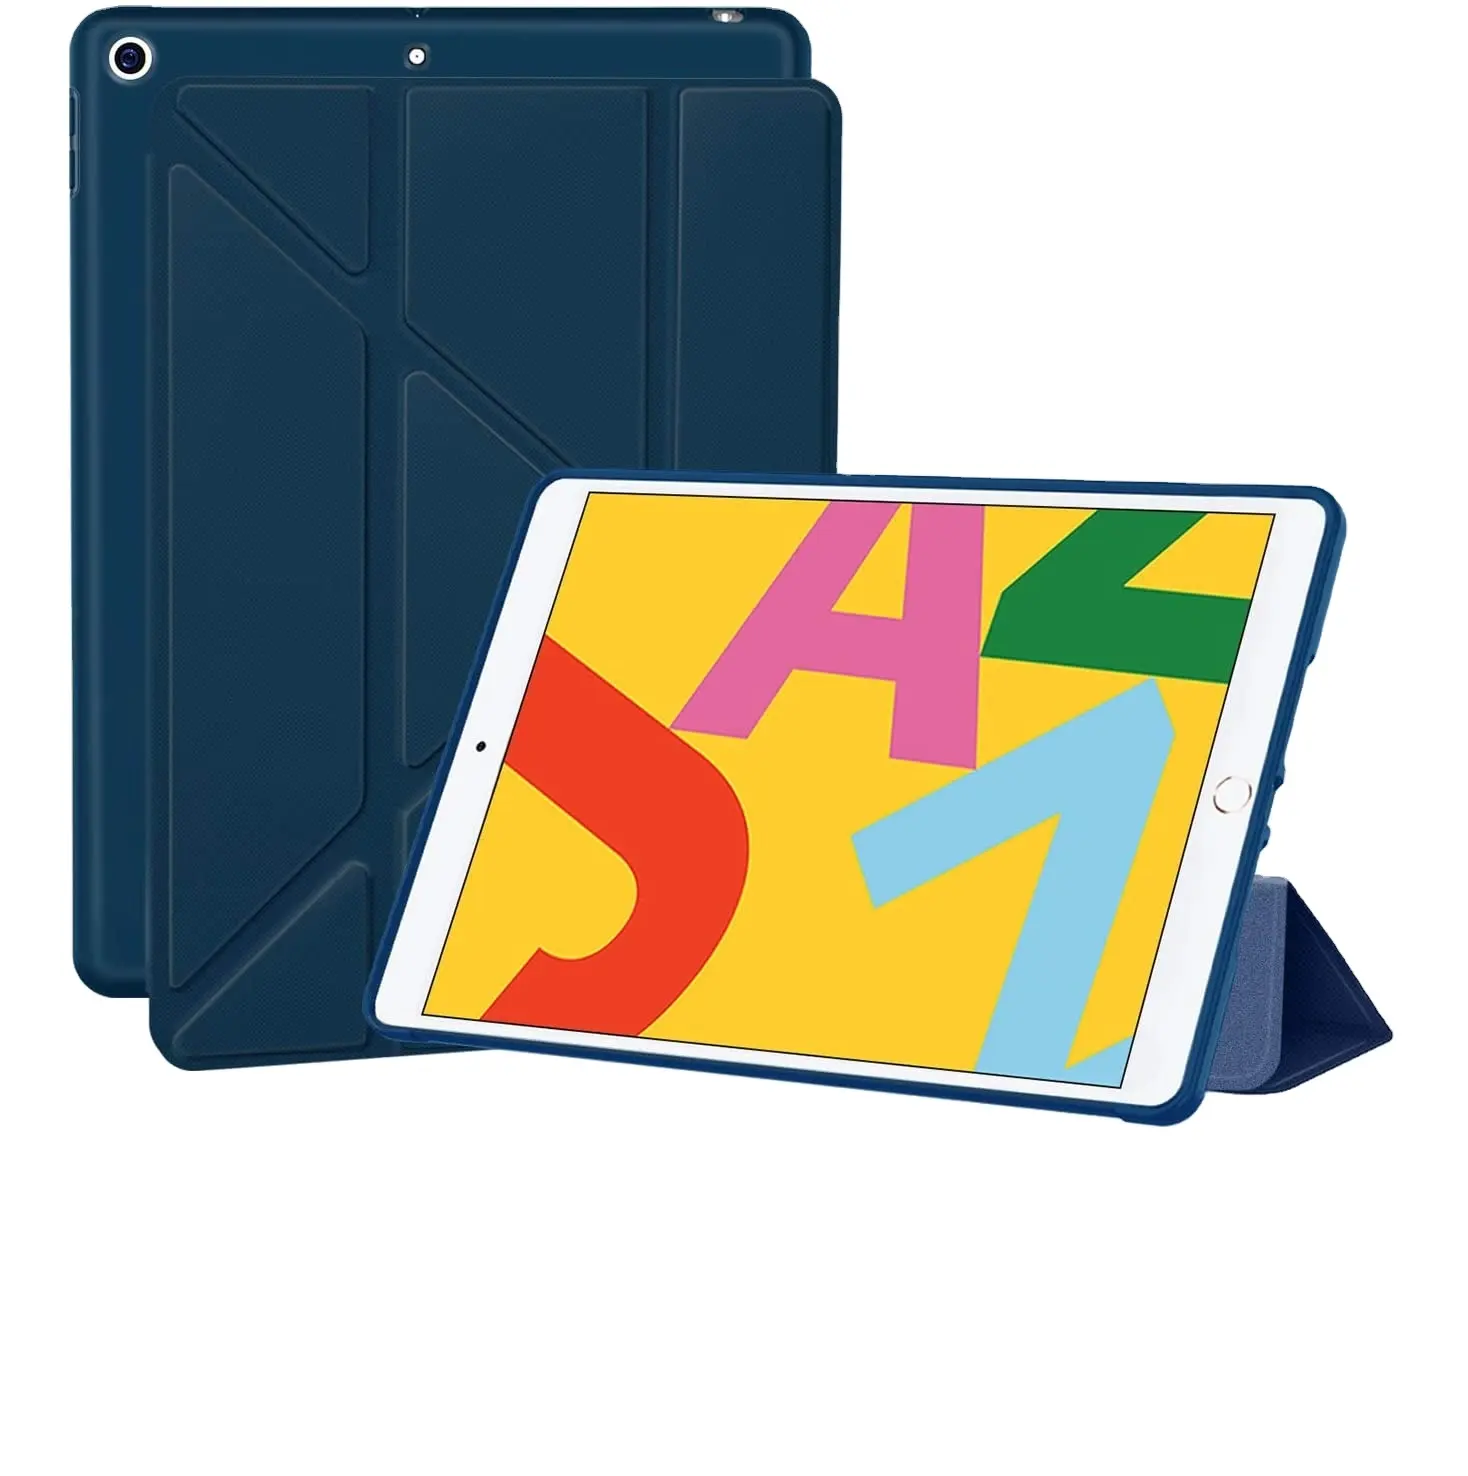 Casing tablet untuk iPad 12.9, casing tablet mendukung bangun otomatis, penutup tablet magnetik sudut pandang multipel untuk iPad air 4